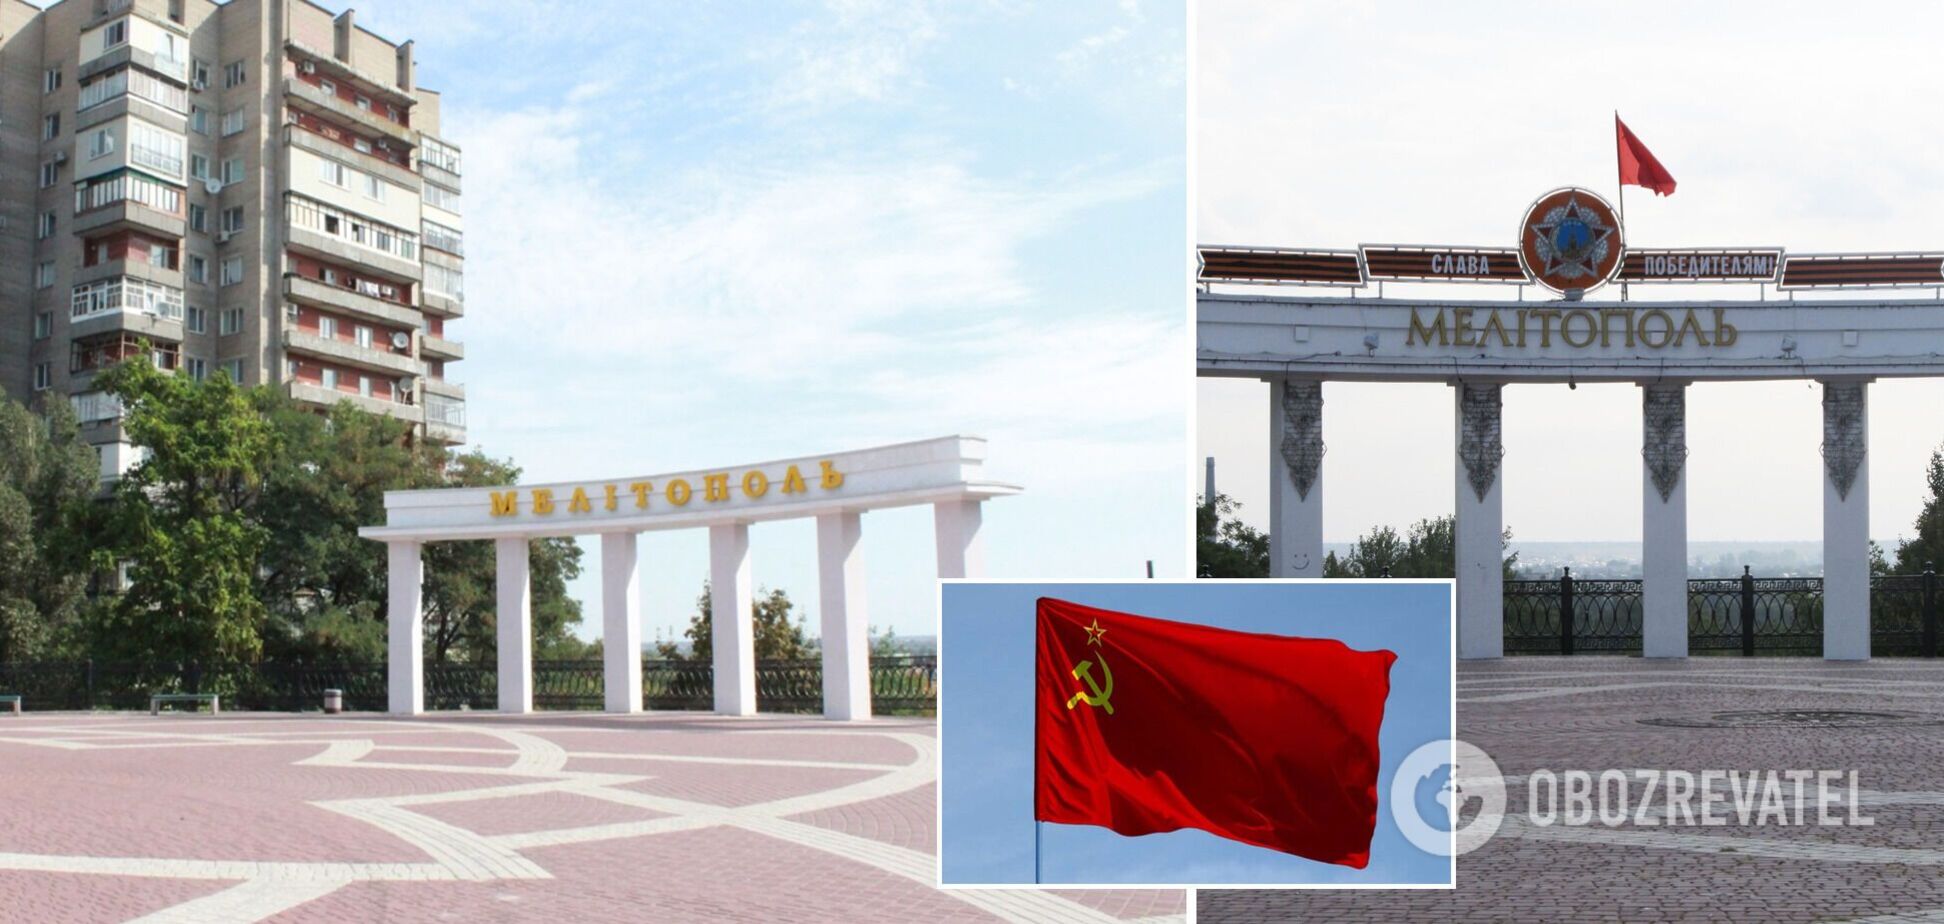 Российские военные нацепили красную тряпку на арку в Мелитополе